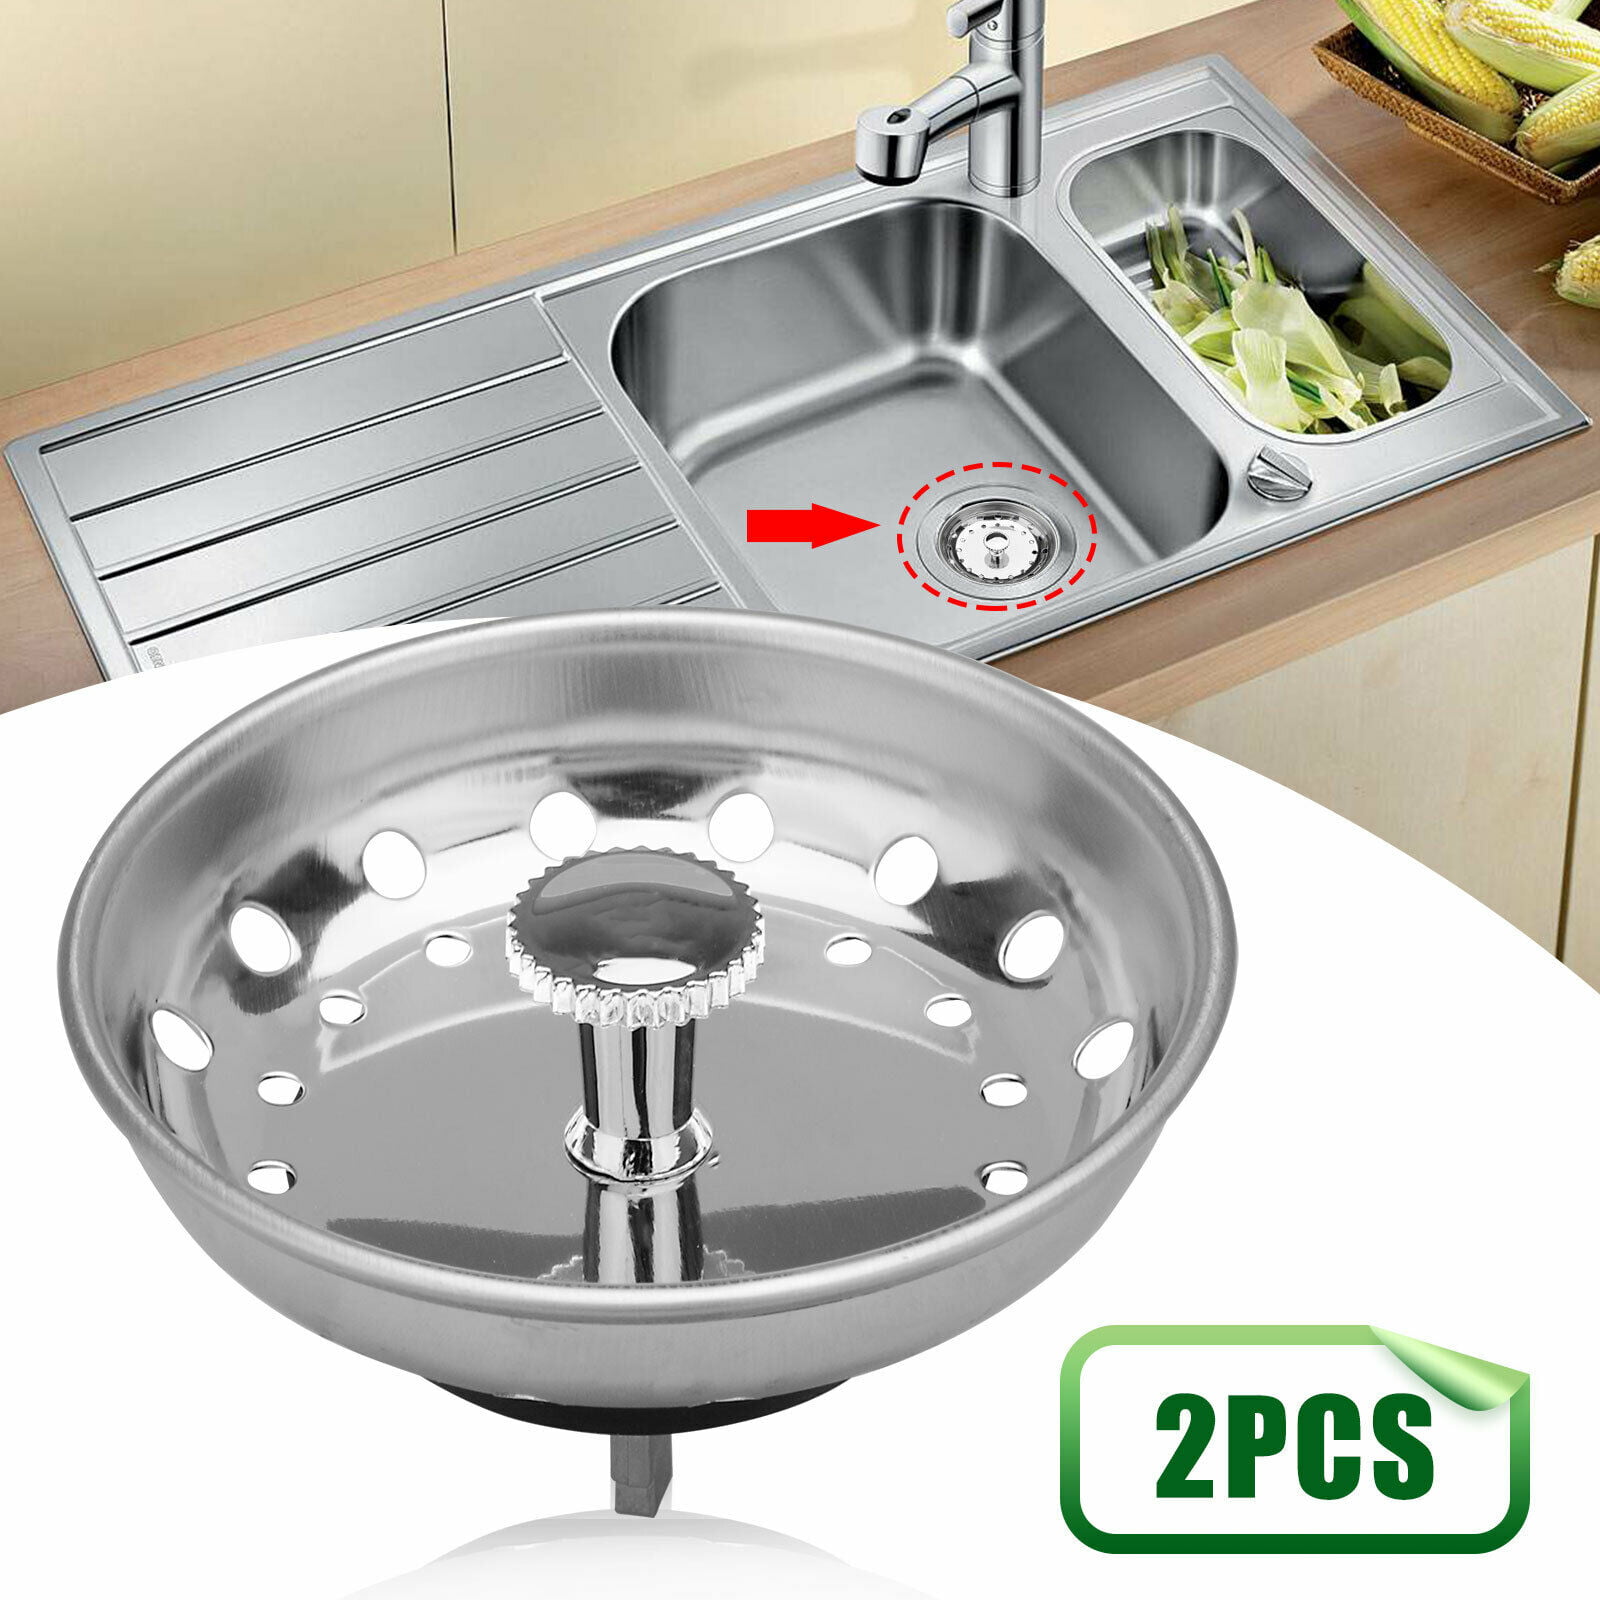 2x Kitchen Stainless Steel Sink Strainer Waste Plug Drain Stopper Filter  Basket - Walmart.com